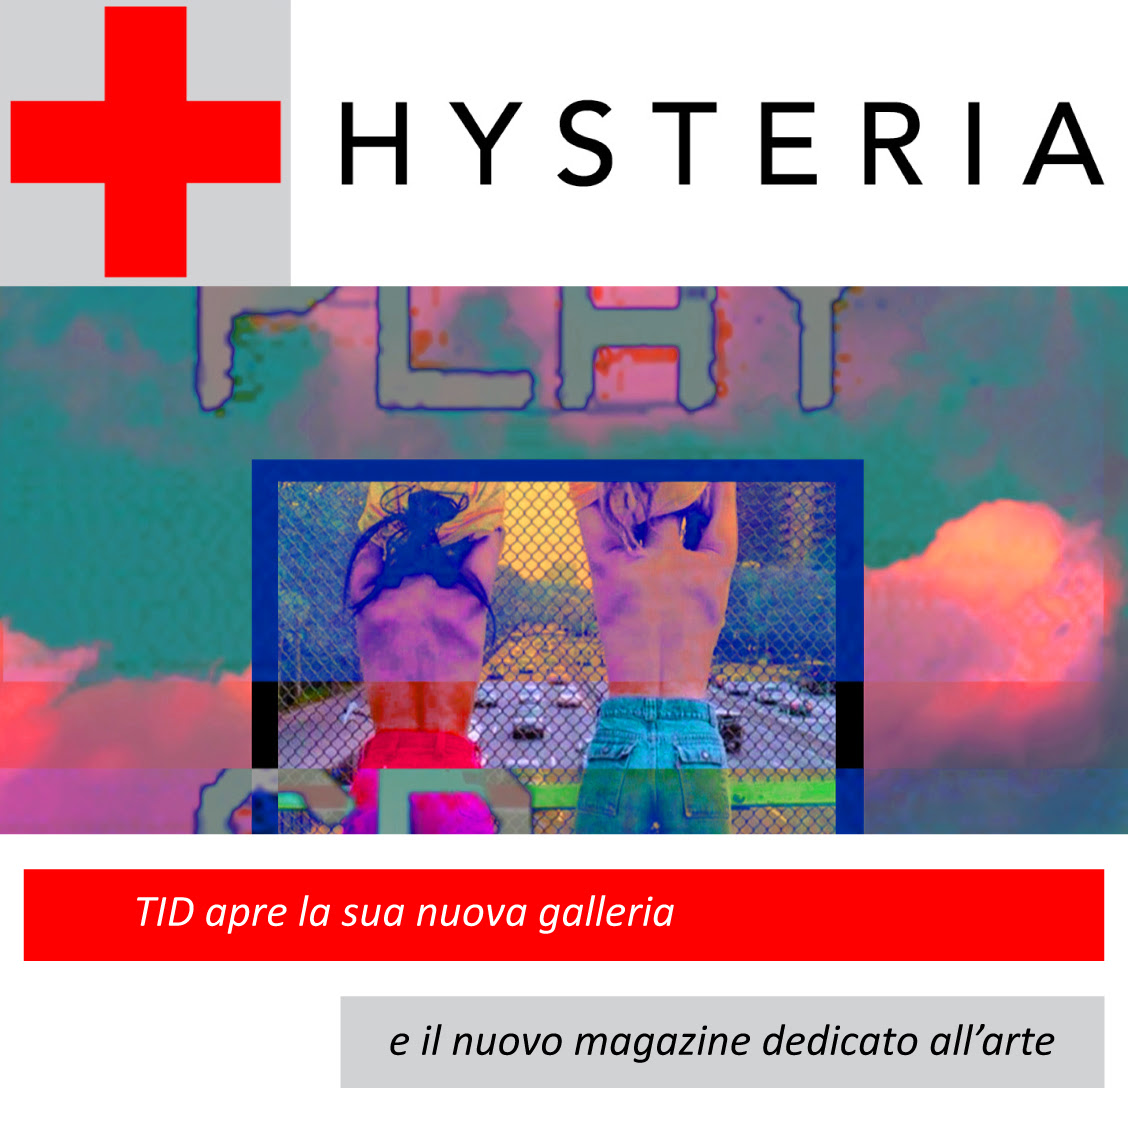 Hysteria Art